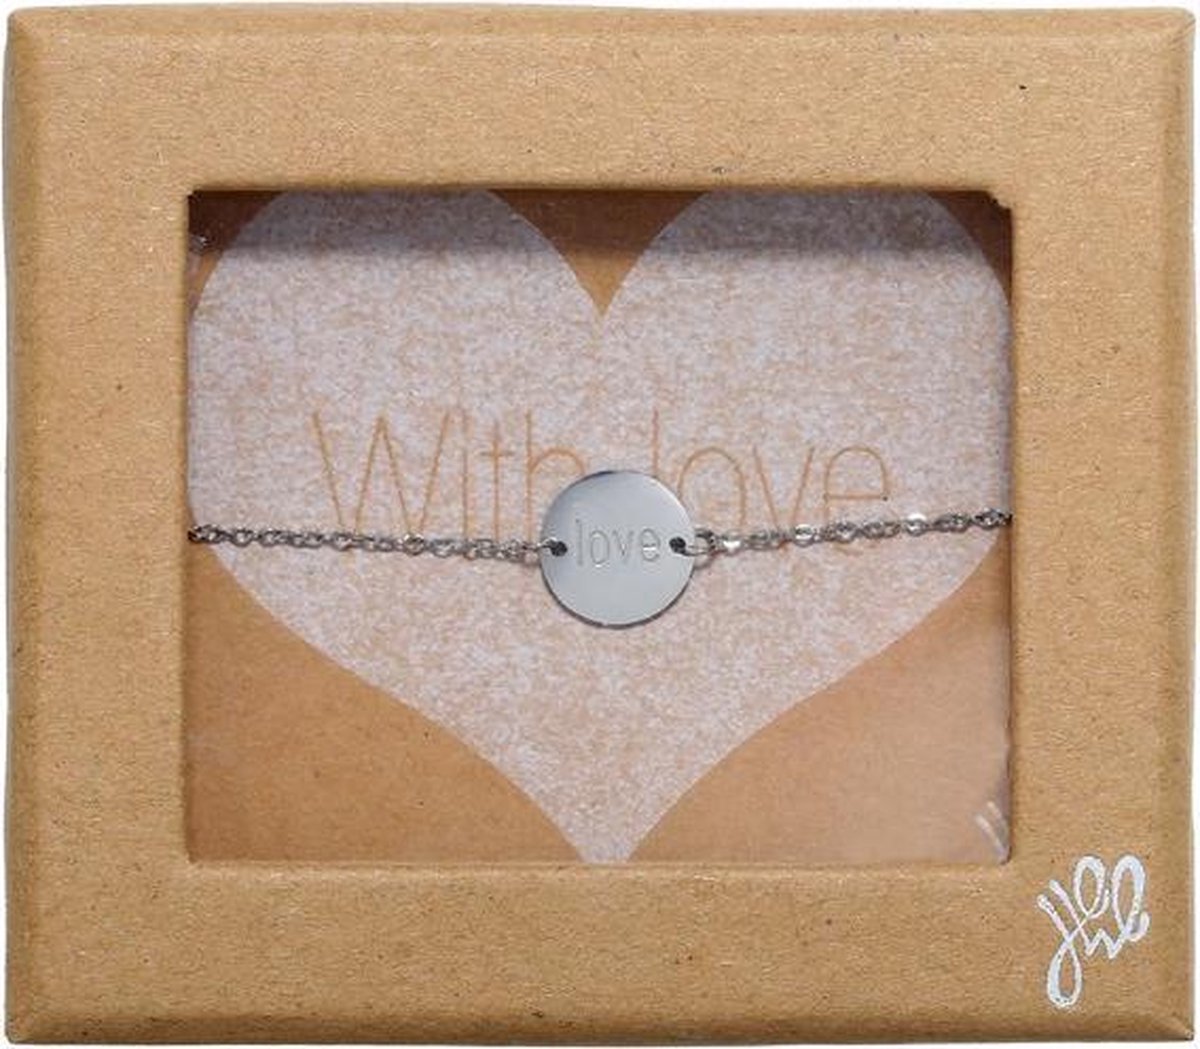 BY-ST6 prachtige giftbox 'With Love' met een speciale subtiele zilveren love armband